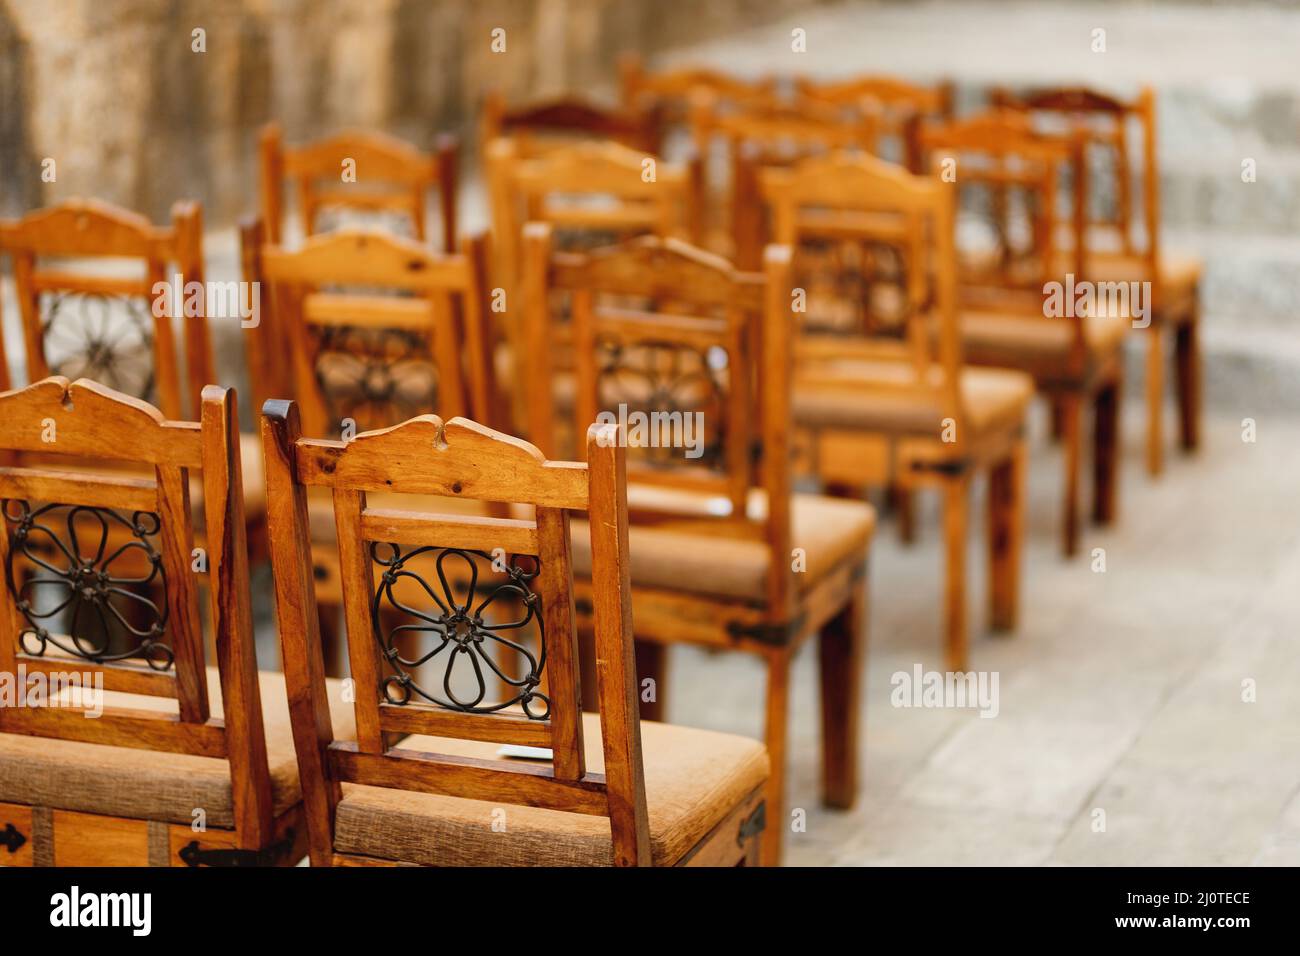 Holzstühle mit Mustern auf der Rückseite stehen in Reihen Stockfoto